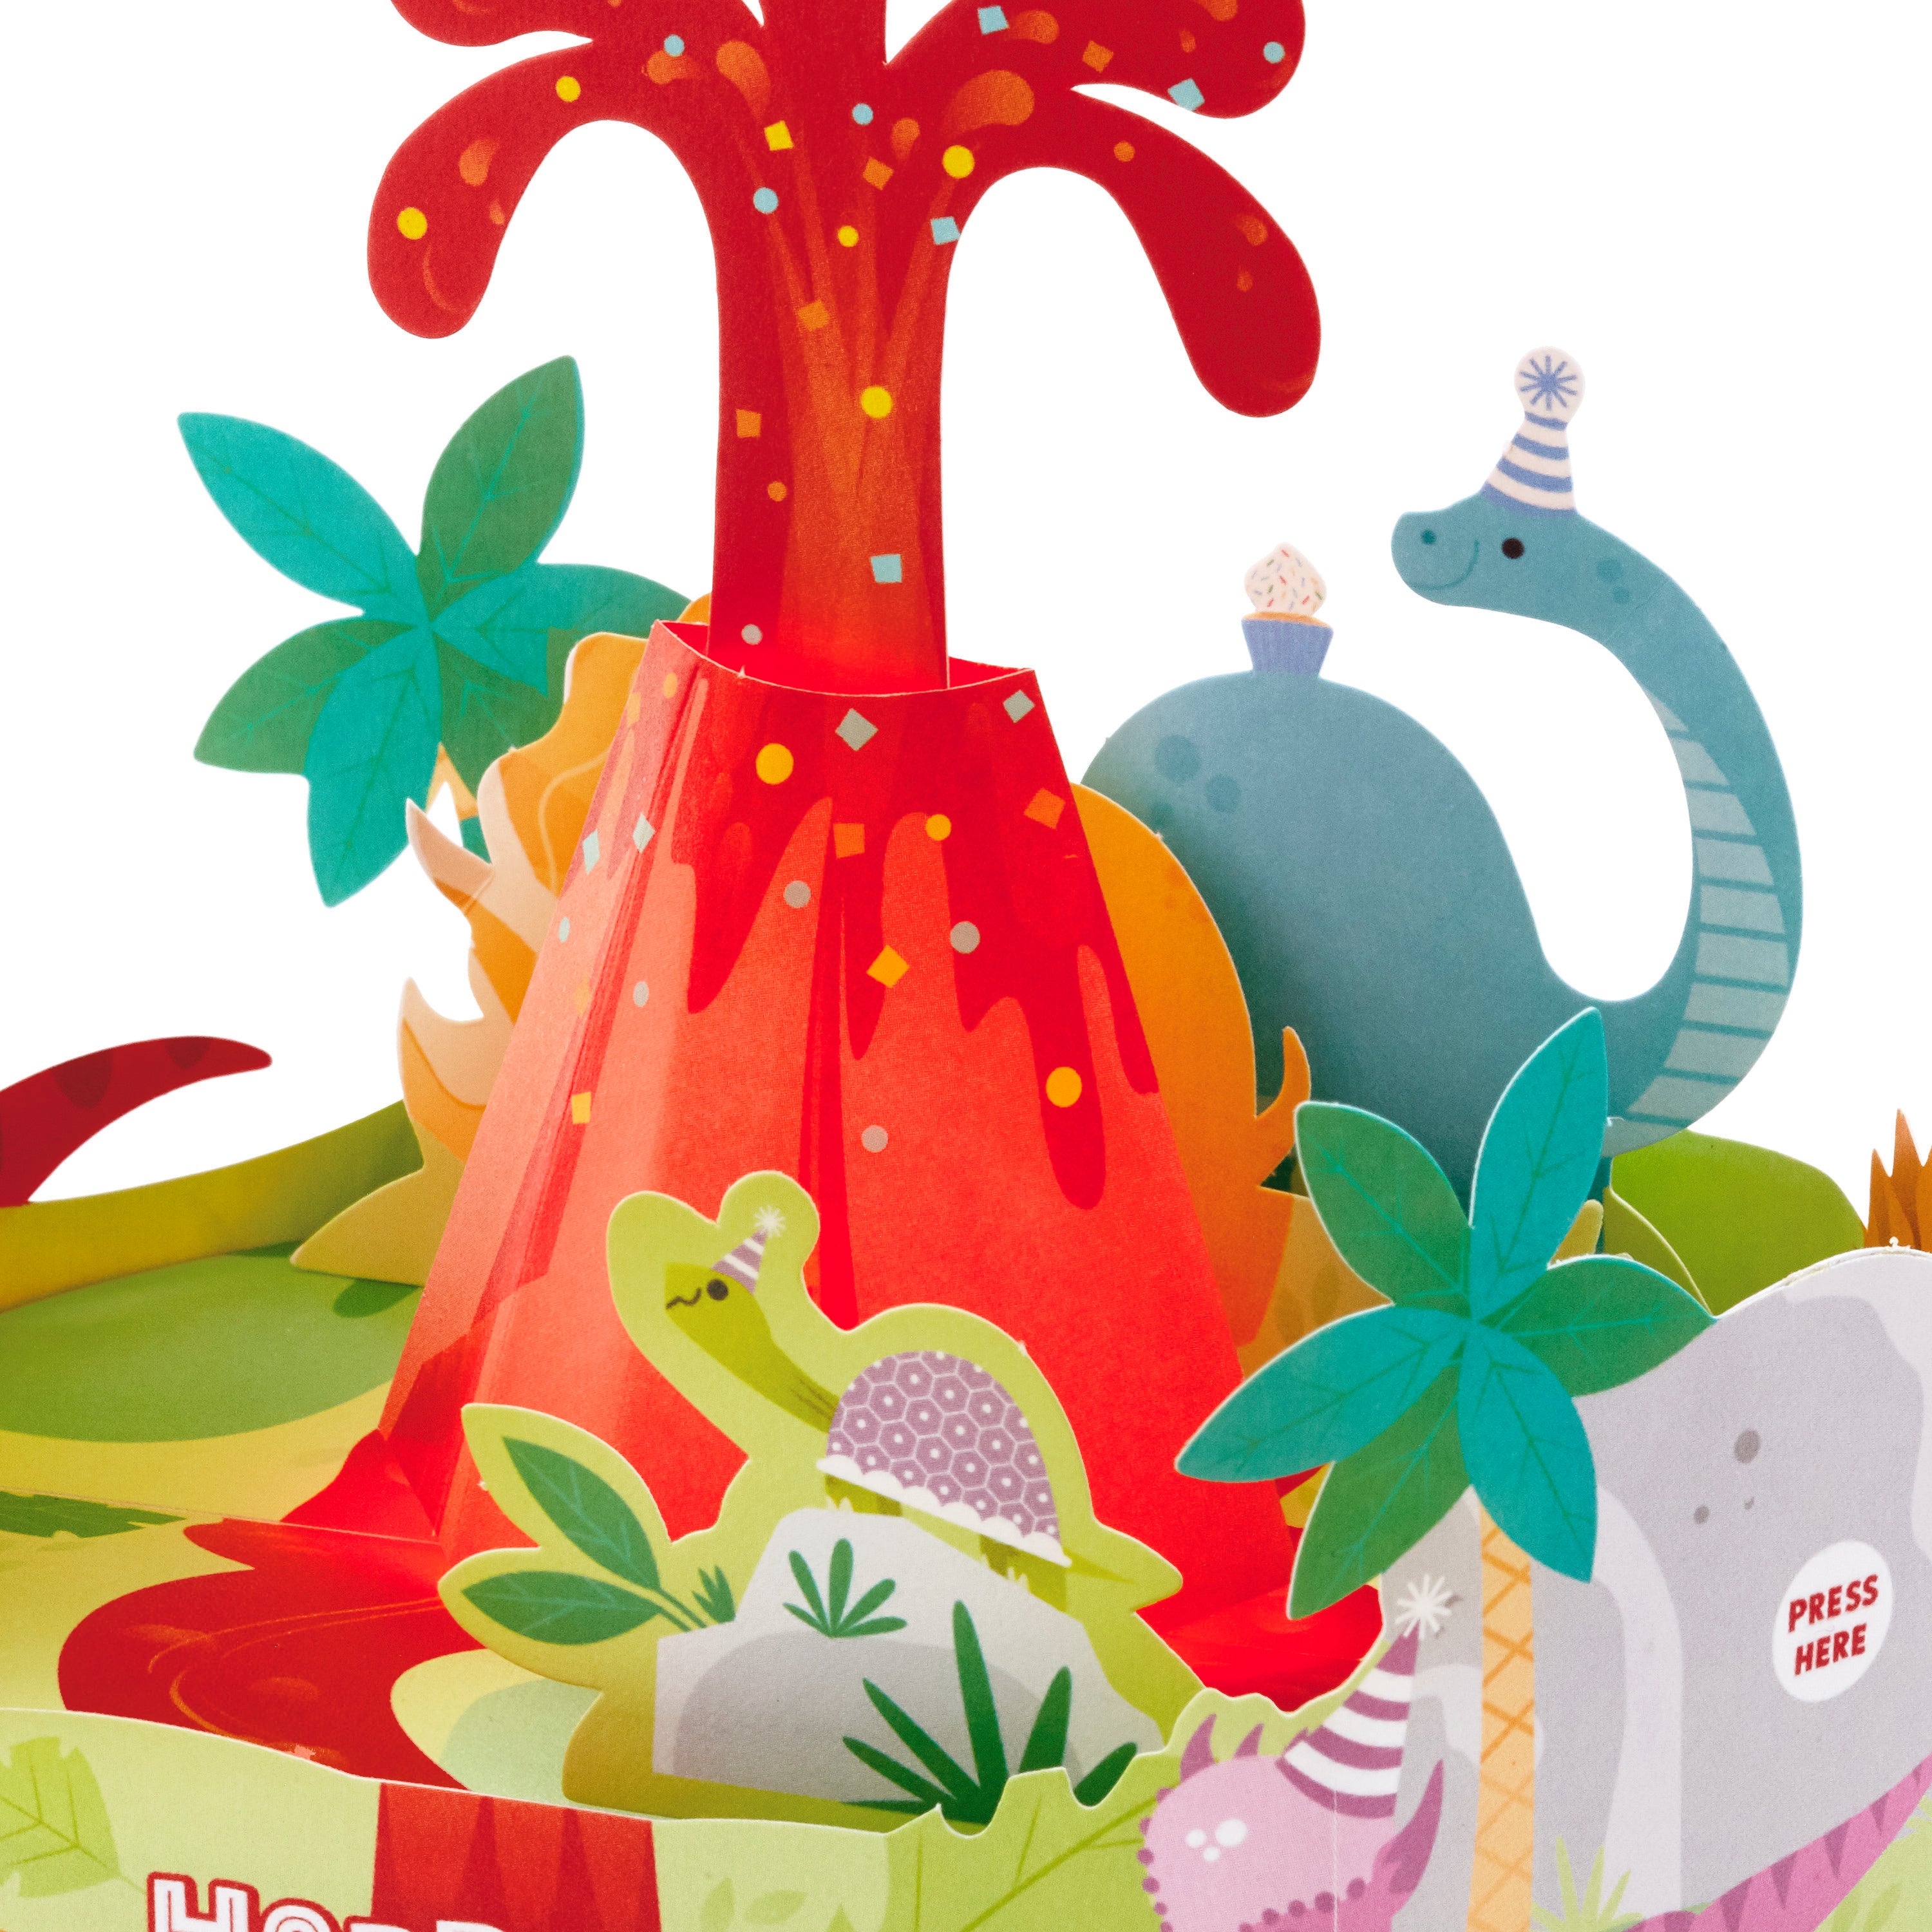 Hallmark Paper Wonder Pop Up Birthday Card for Kids with Sound (Dinosaur, Volcano)